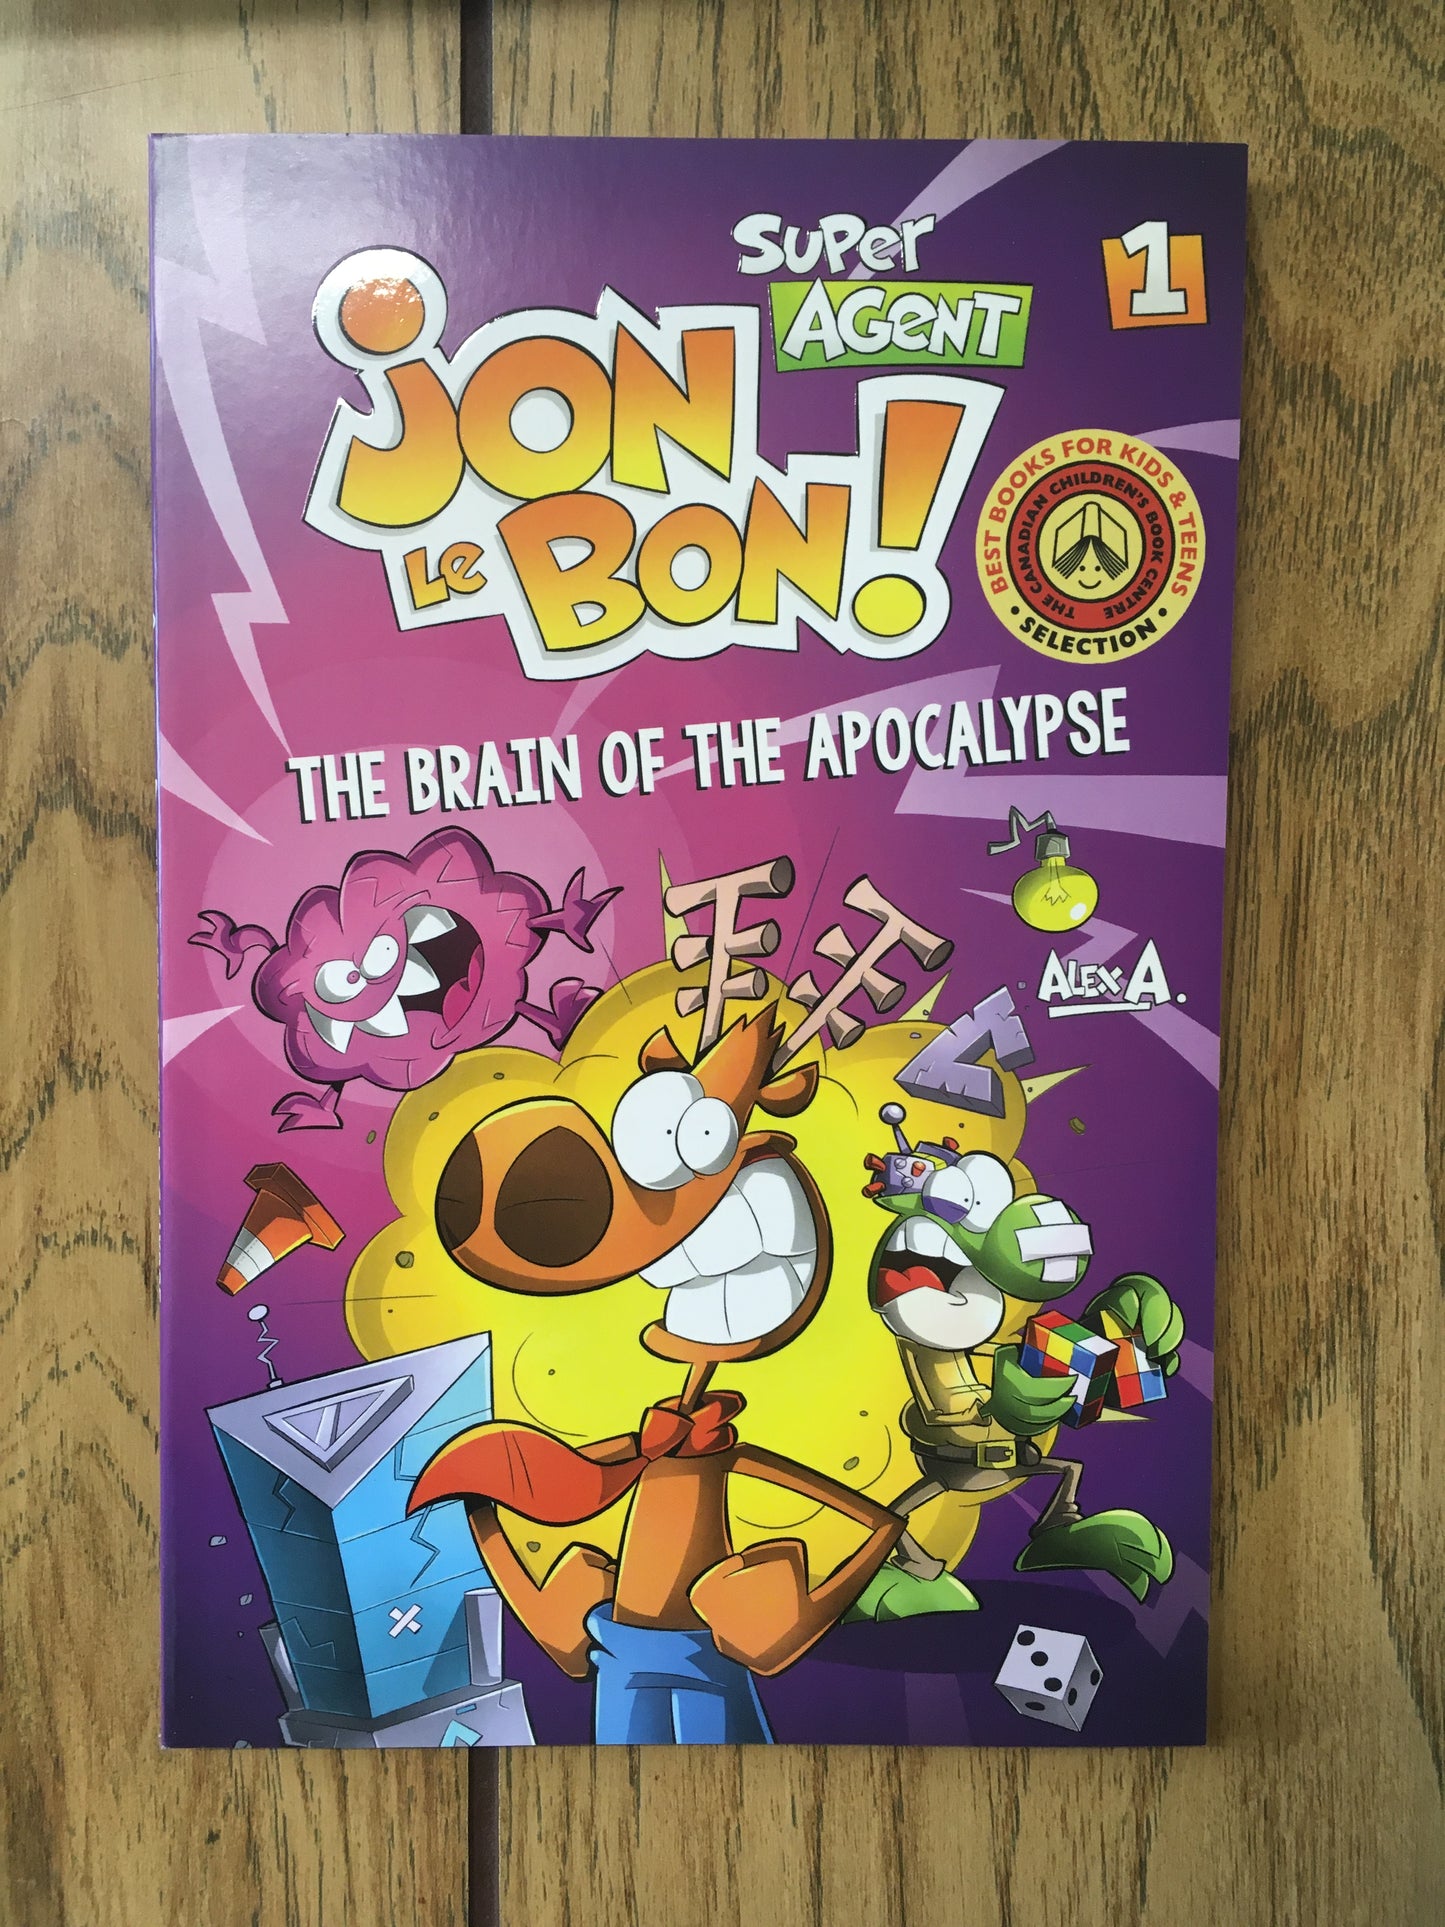 Super Agent Jon Le Bon! #1: The Brain of the Apocalypse